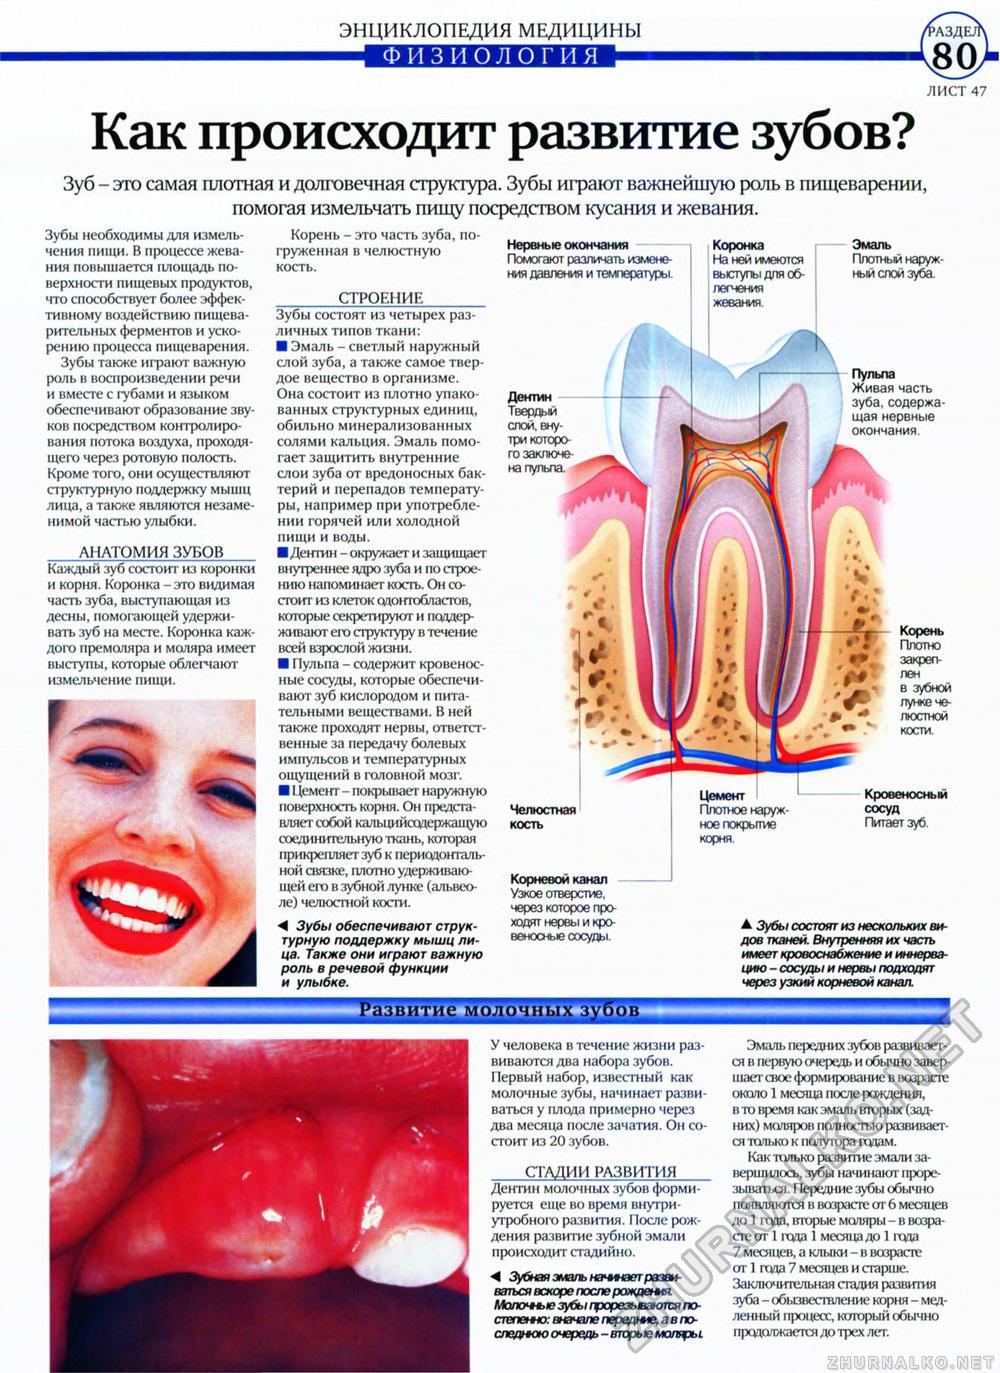 Физиология зуба